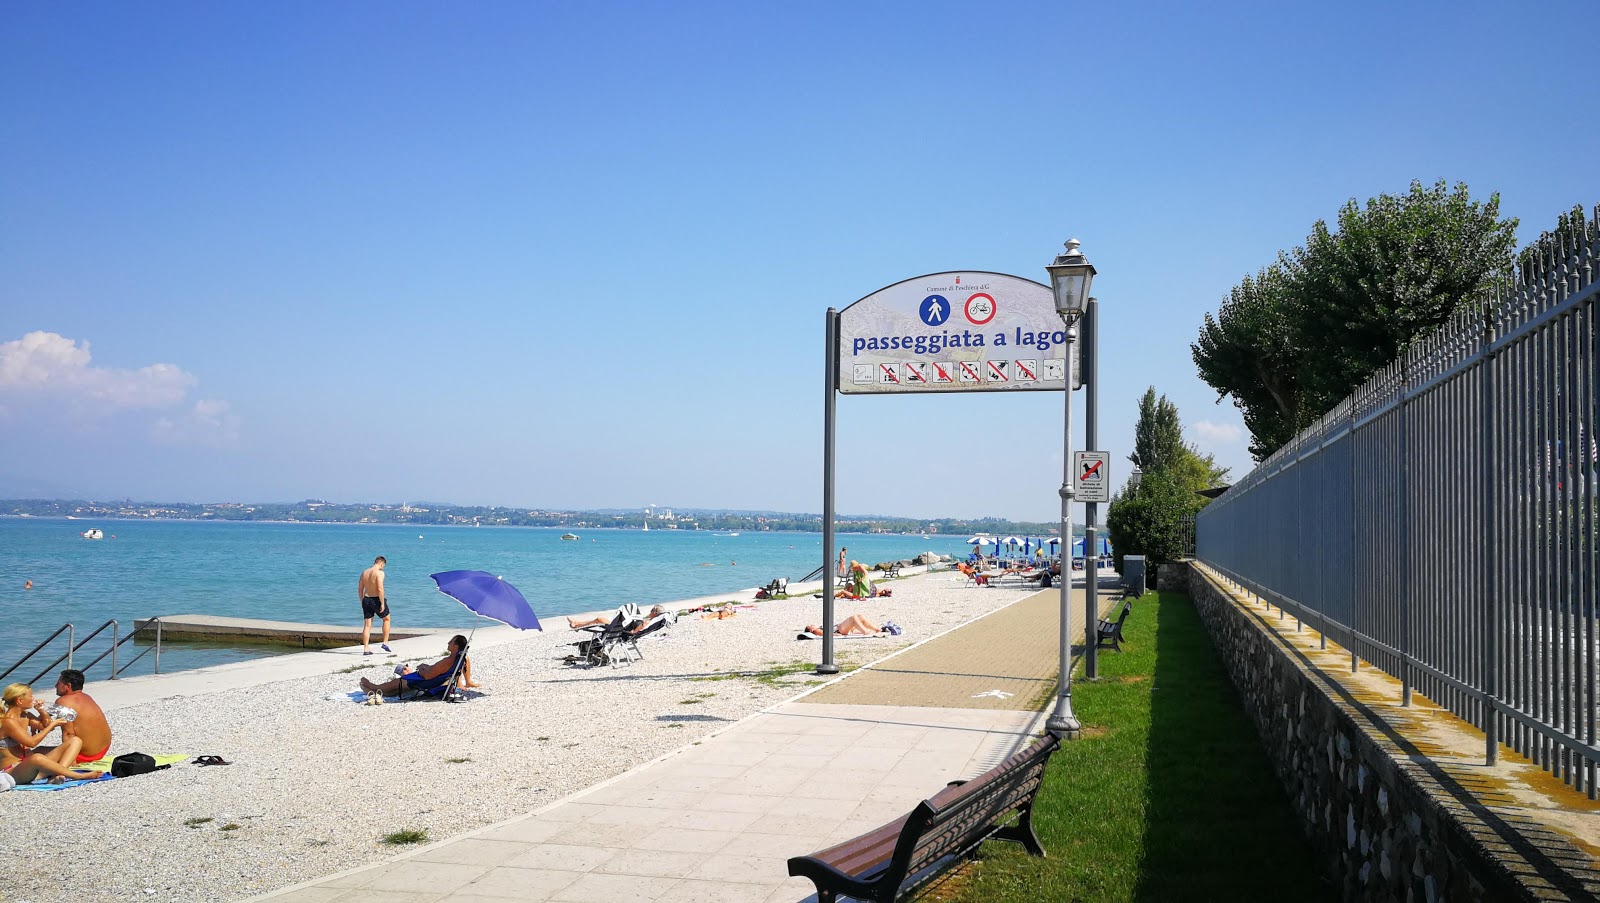 Foto de Spiaggia Peschiera com alto nível de limpeza